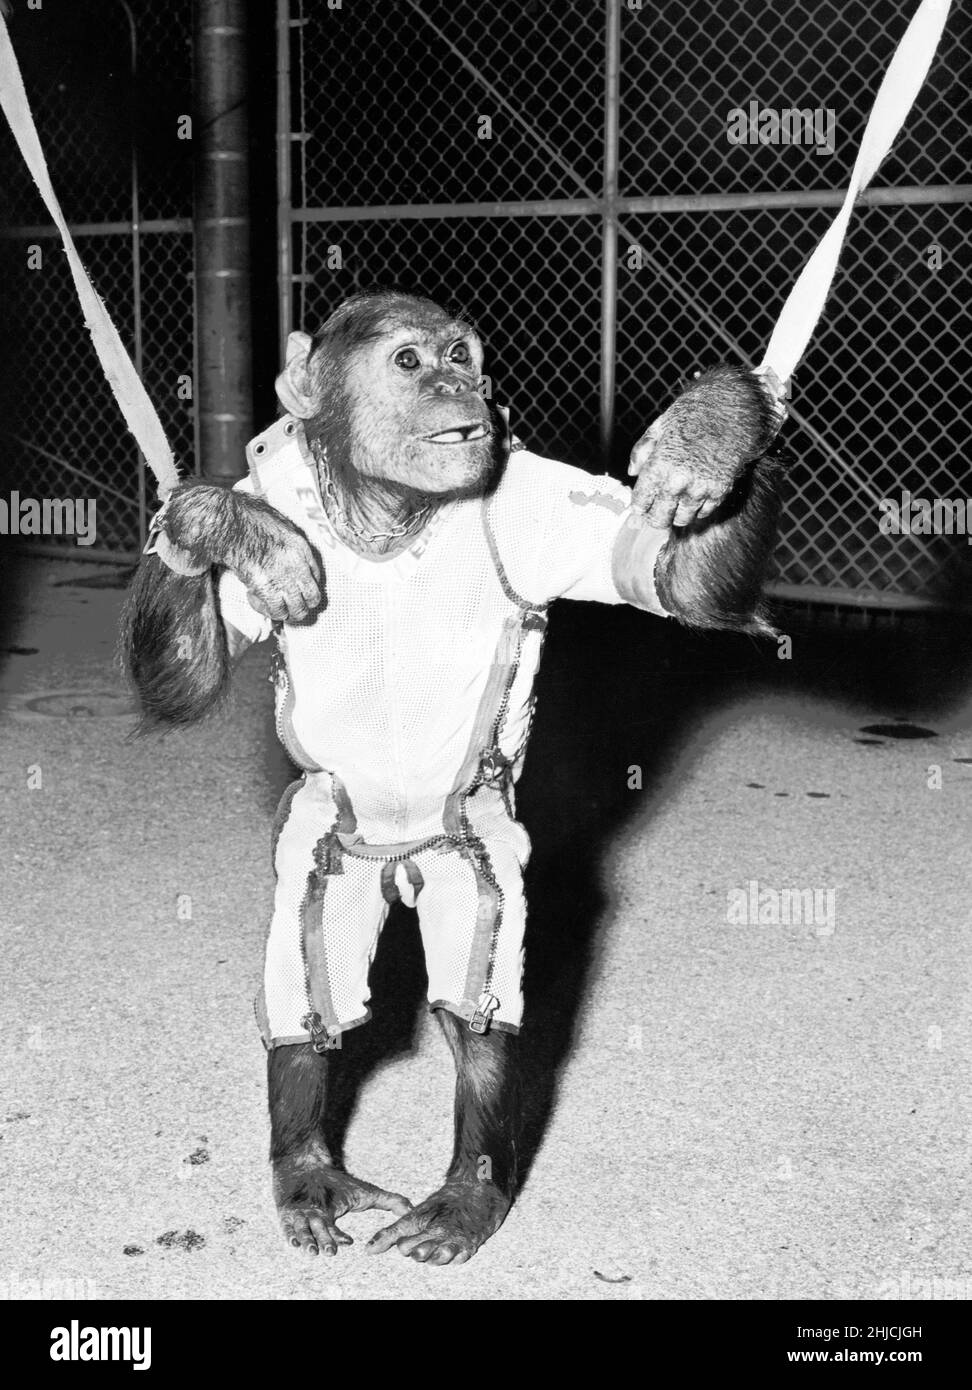 Enos trägt einen Raumanzügen und Handgelenksbindern. Enos (d. 4. November 1962) war der 2nd ins All gestartete Schimpansen und der erste Schimpansen, der die Erdumlaufbahn erreicht hat. Enos' Flug fand am 29. November 1961 statt. Sein Training war für ihn intensiver als für seinen Vorgänger Ham, da Enos über längere Zeit Schwerelosigkeit und höheren gs ausgesetzt war. Seine Ausbildung beinhaltete Psychomotorunterricht und Flugzeugflüge. Enos starb an einer durch Shigellose bedingten Dysenterie, die gegen damals bekannte Antibiotika resistent war. Pathologen berichteten über keine Symptome, die auf seinen Weltraumflug zurückzuführen oder mit ihm in Zusammenhang stehen könnten. Stockfoto